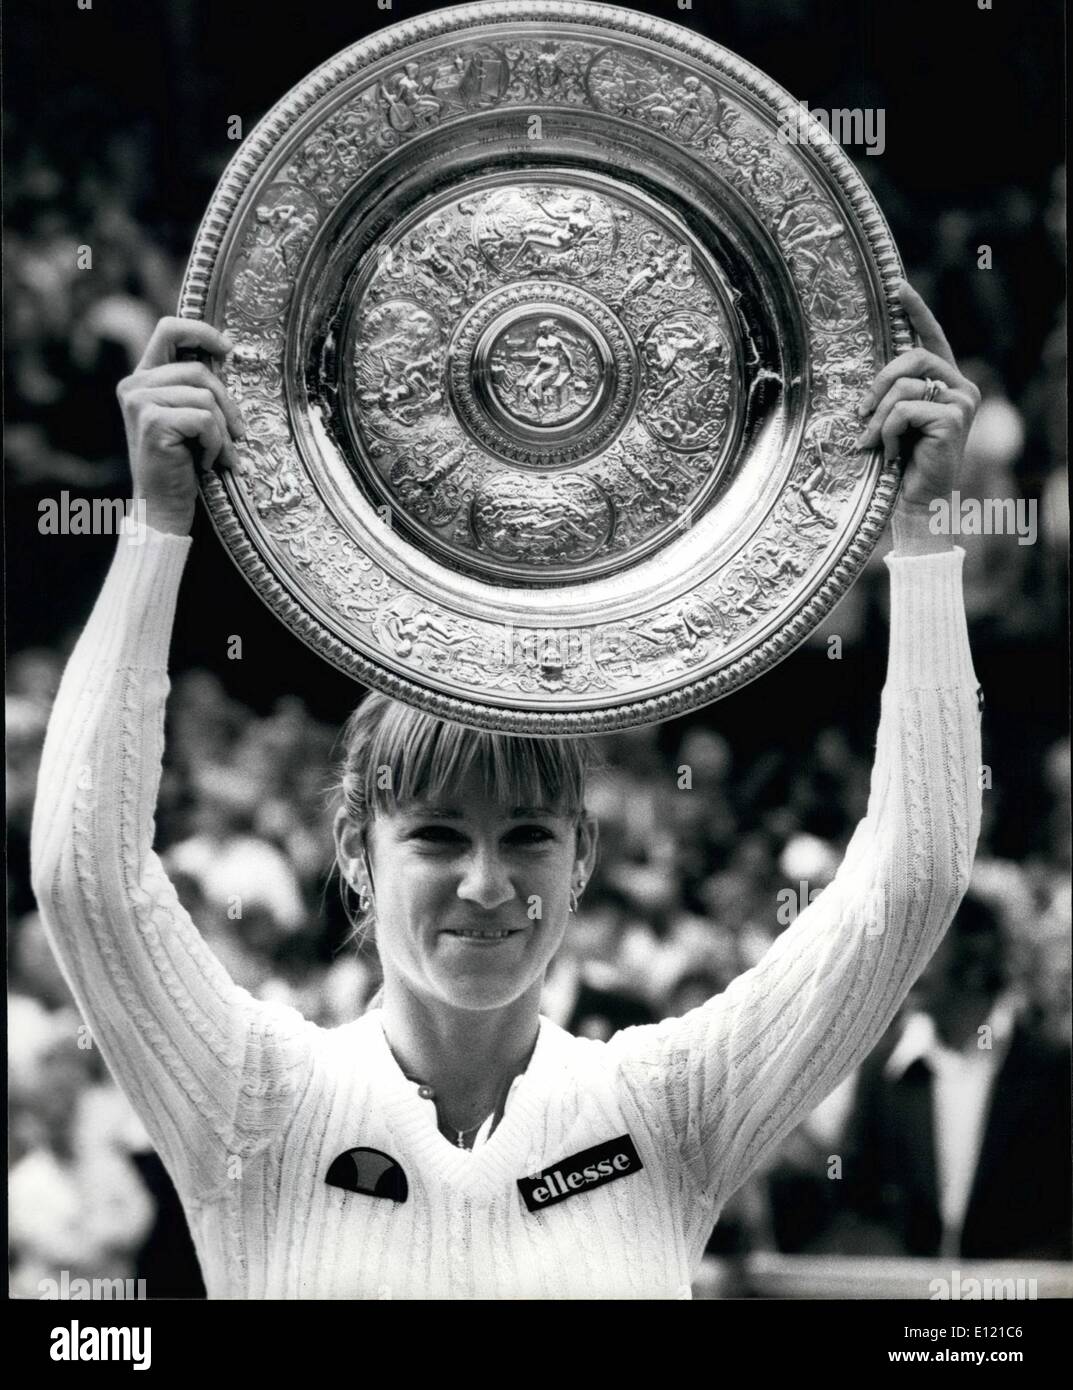 Juillet 07, 1981 - Chris Evert-Lloyd remporte la finale dames : Le No 1 chers Chris semences Ever-Lloyd a remporté la finale dames sur le court central de Wimbledon aujourd'hui quand elle a battu le 19-year-old Czech Mandykeve par 6-2 6-2. Phot montre Chris Lloyd contient jusqu'le trophée après avoir remporté le titre à Wimbledon aujourd'hui. Banque D'Images